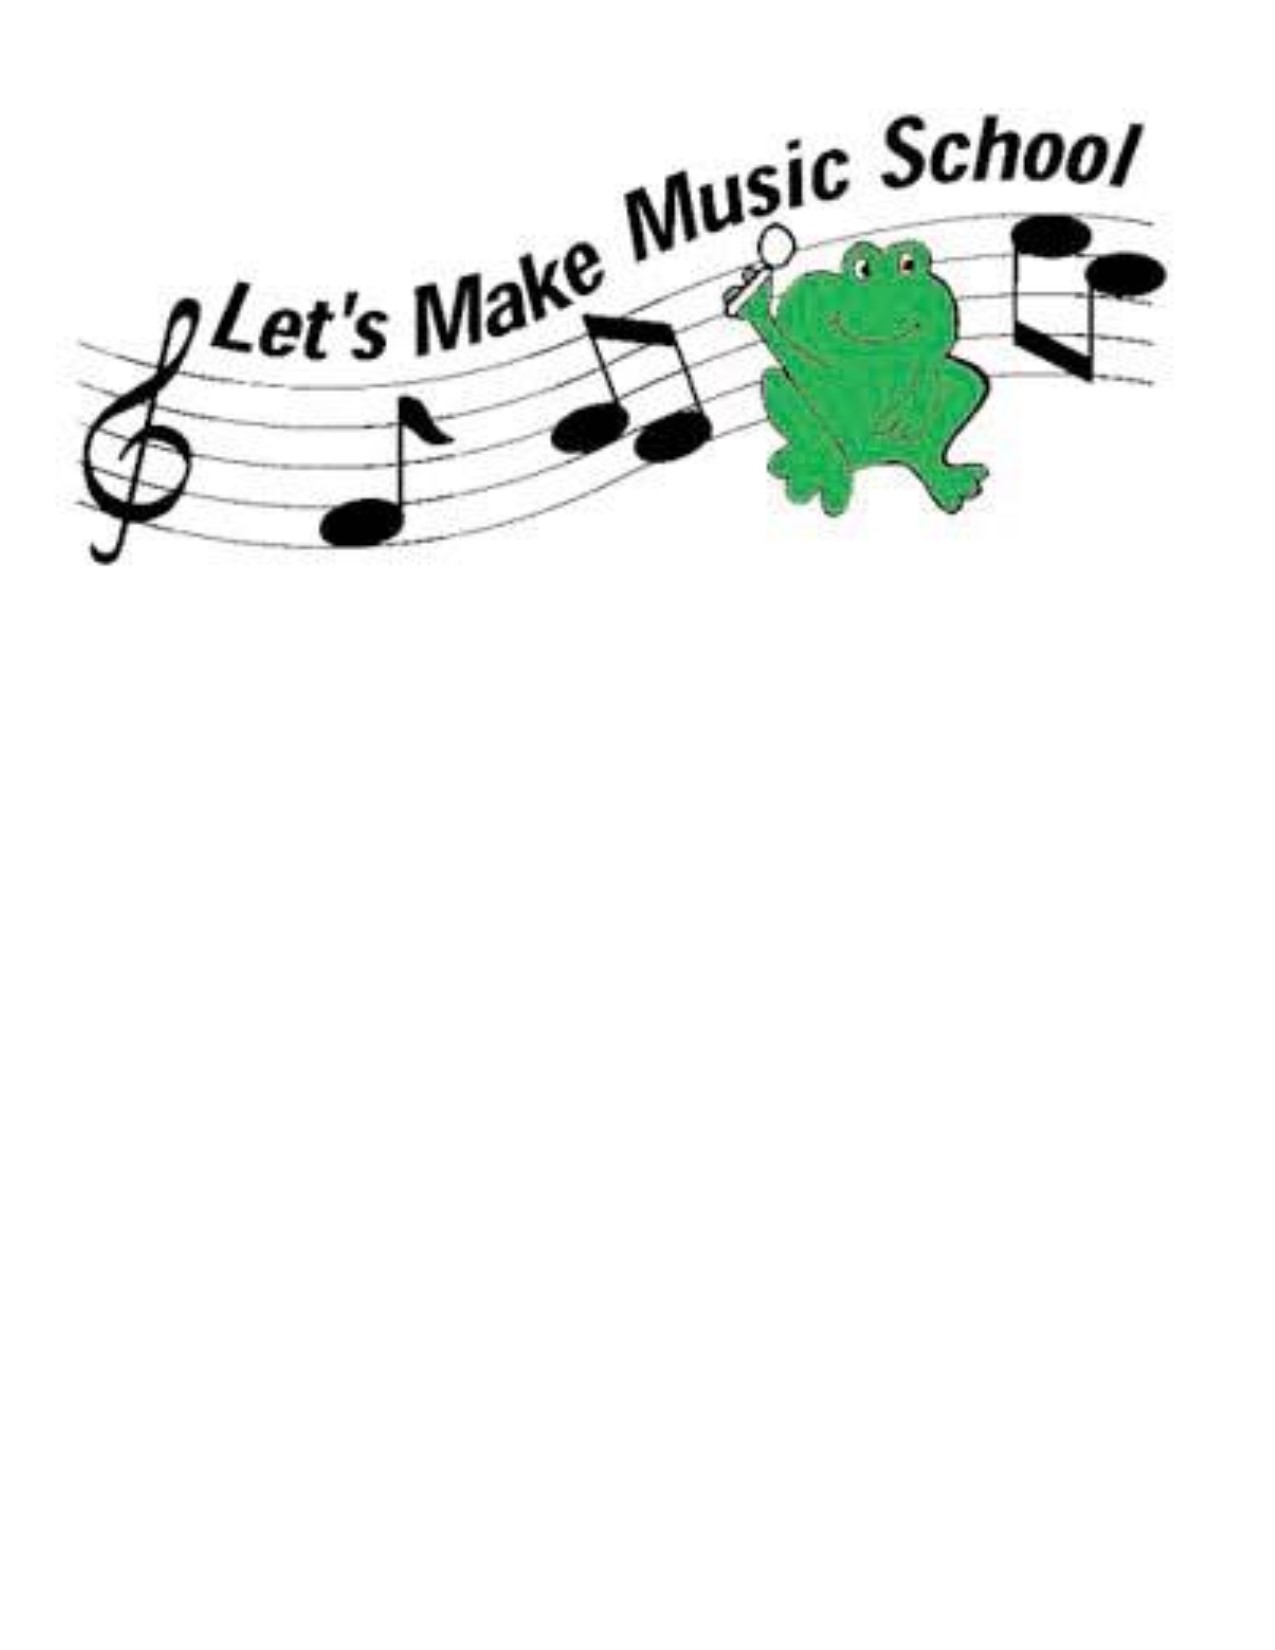 Logo for Let's Make Music School